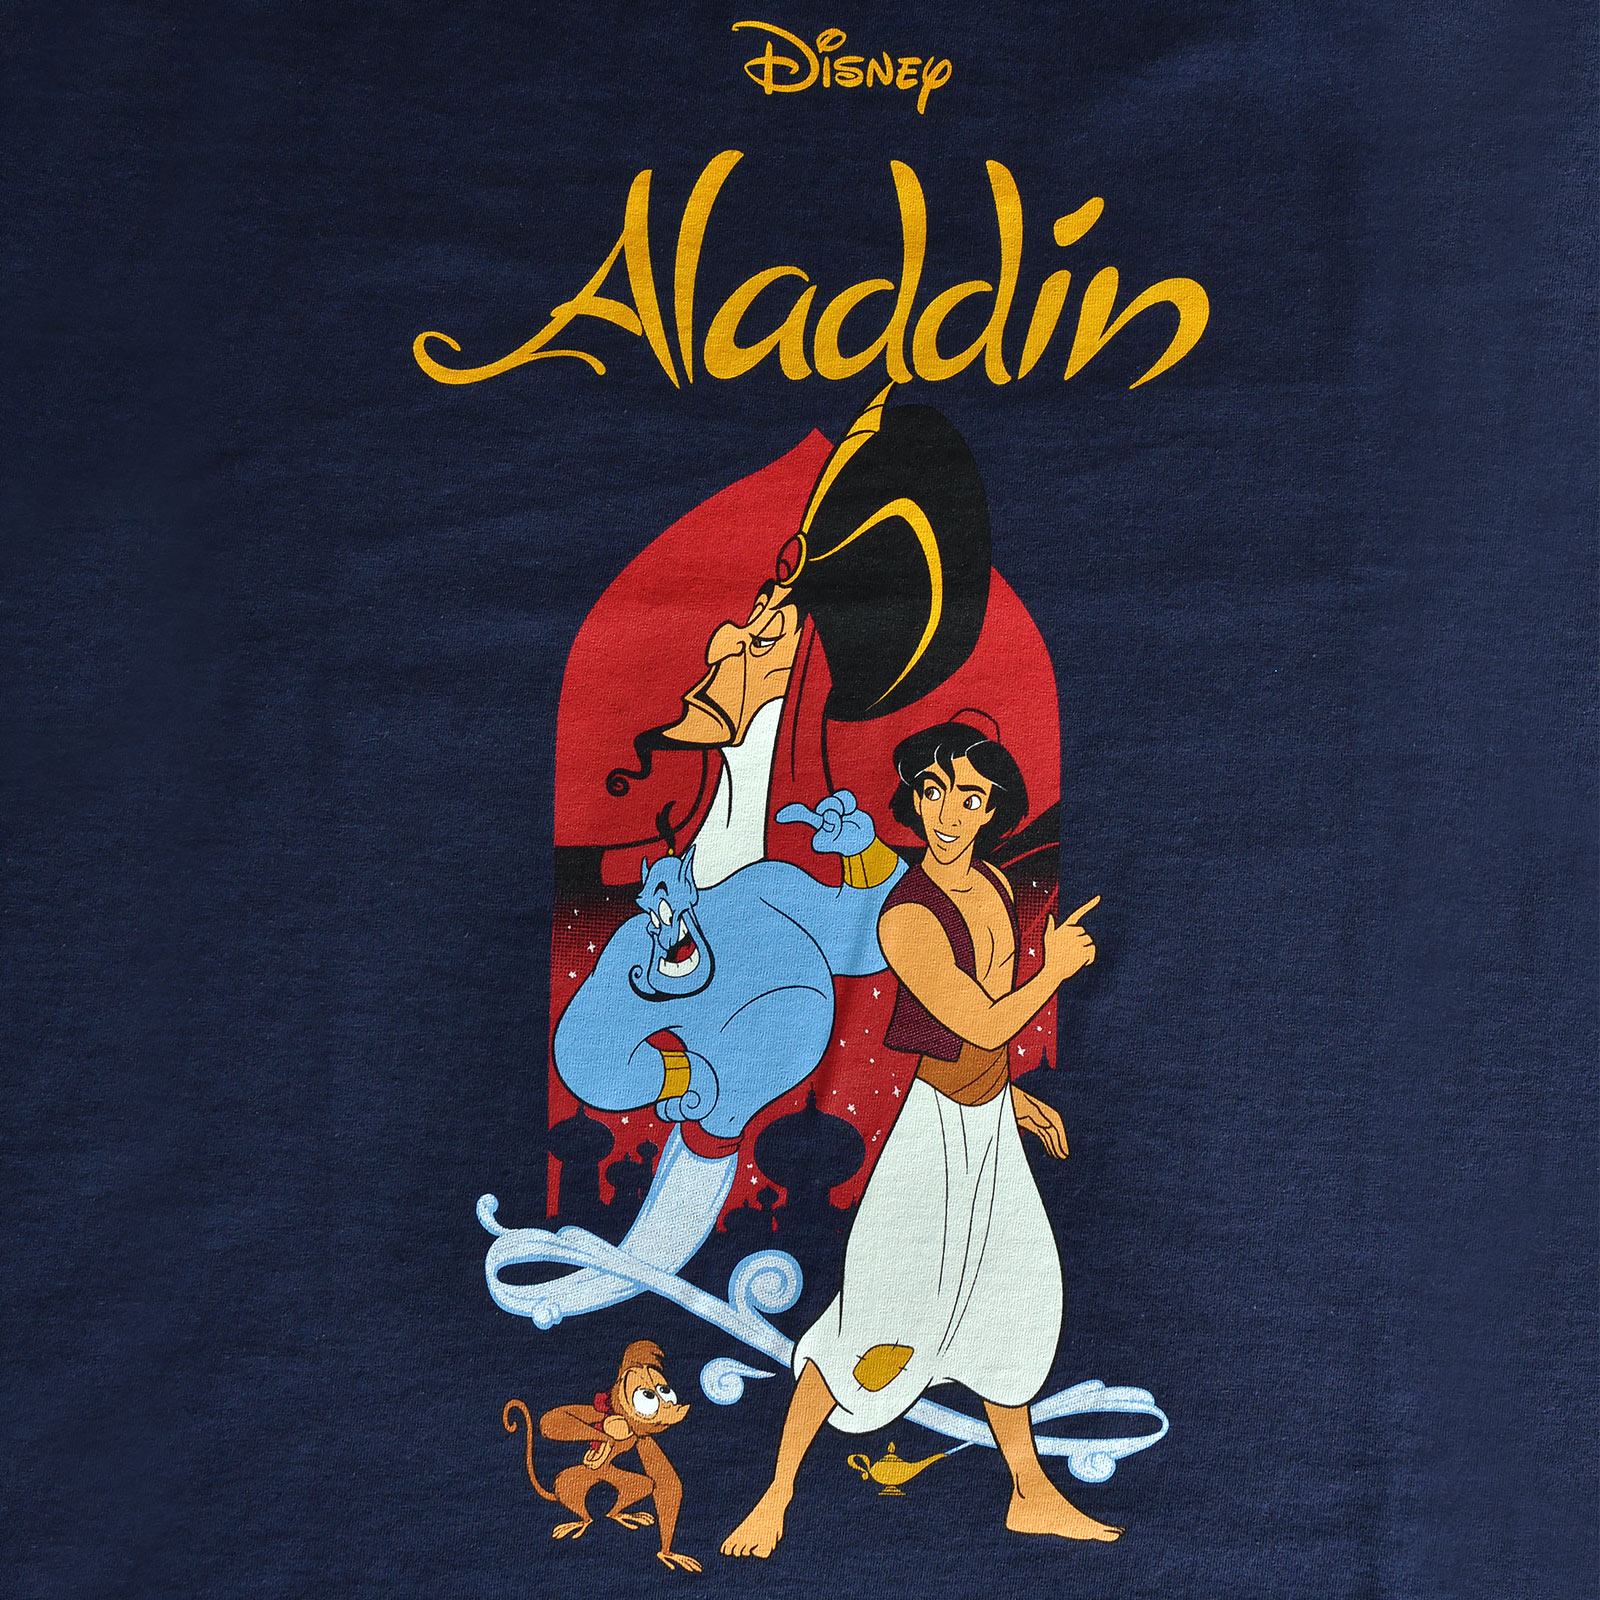 Aladdin - Dschafar und Aladdin T-Shirt Damen blau